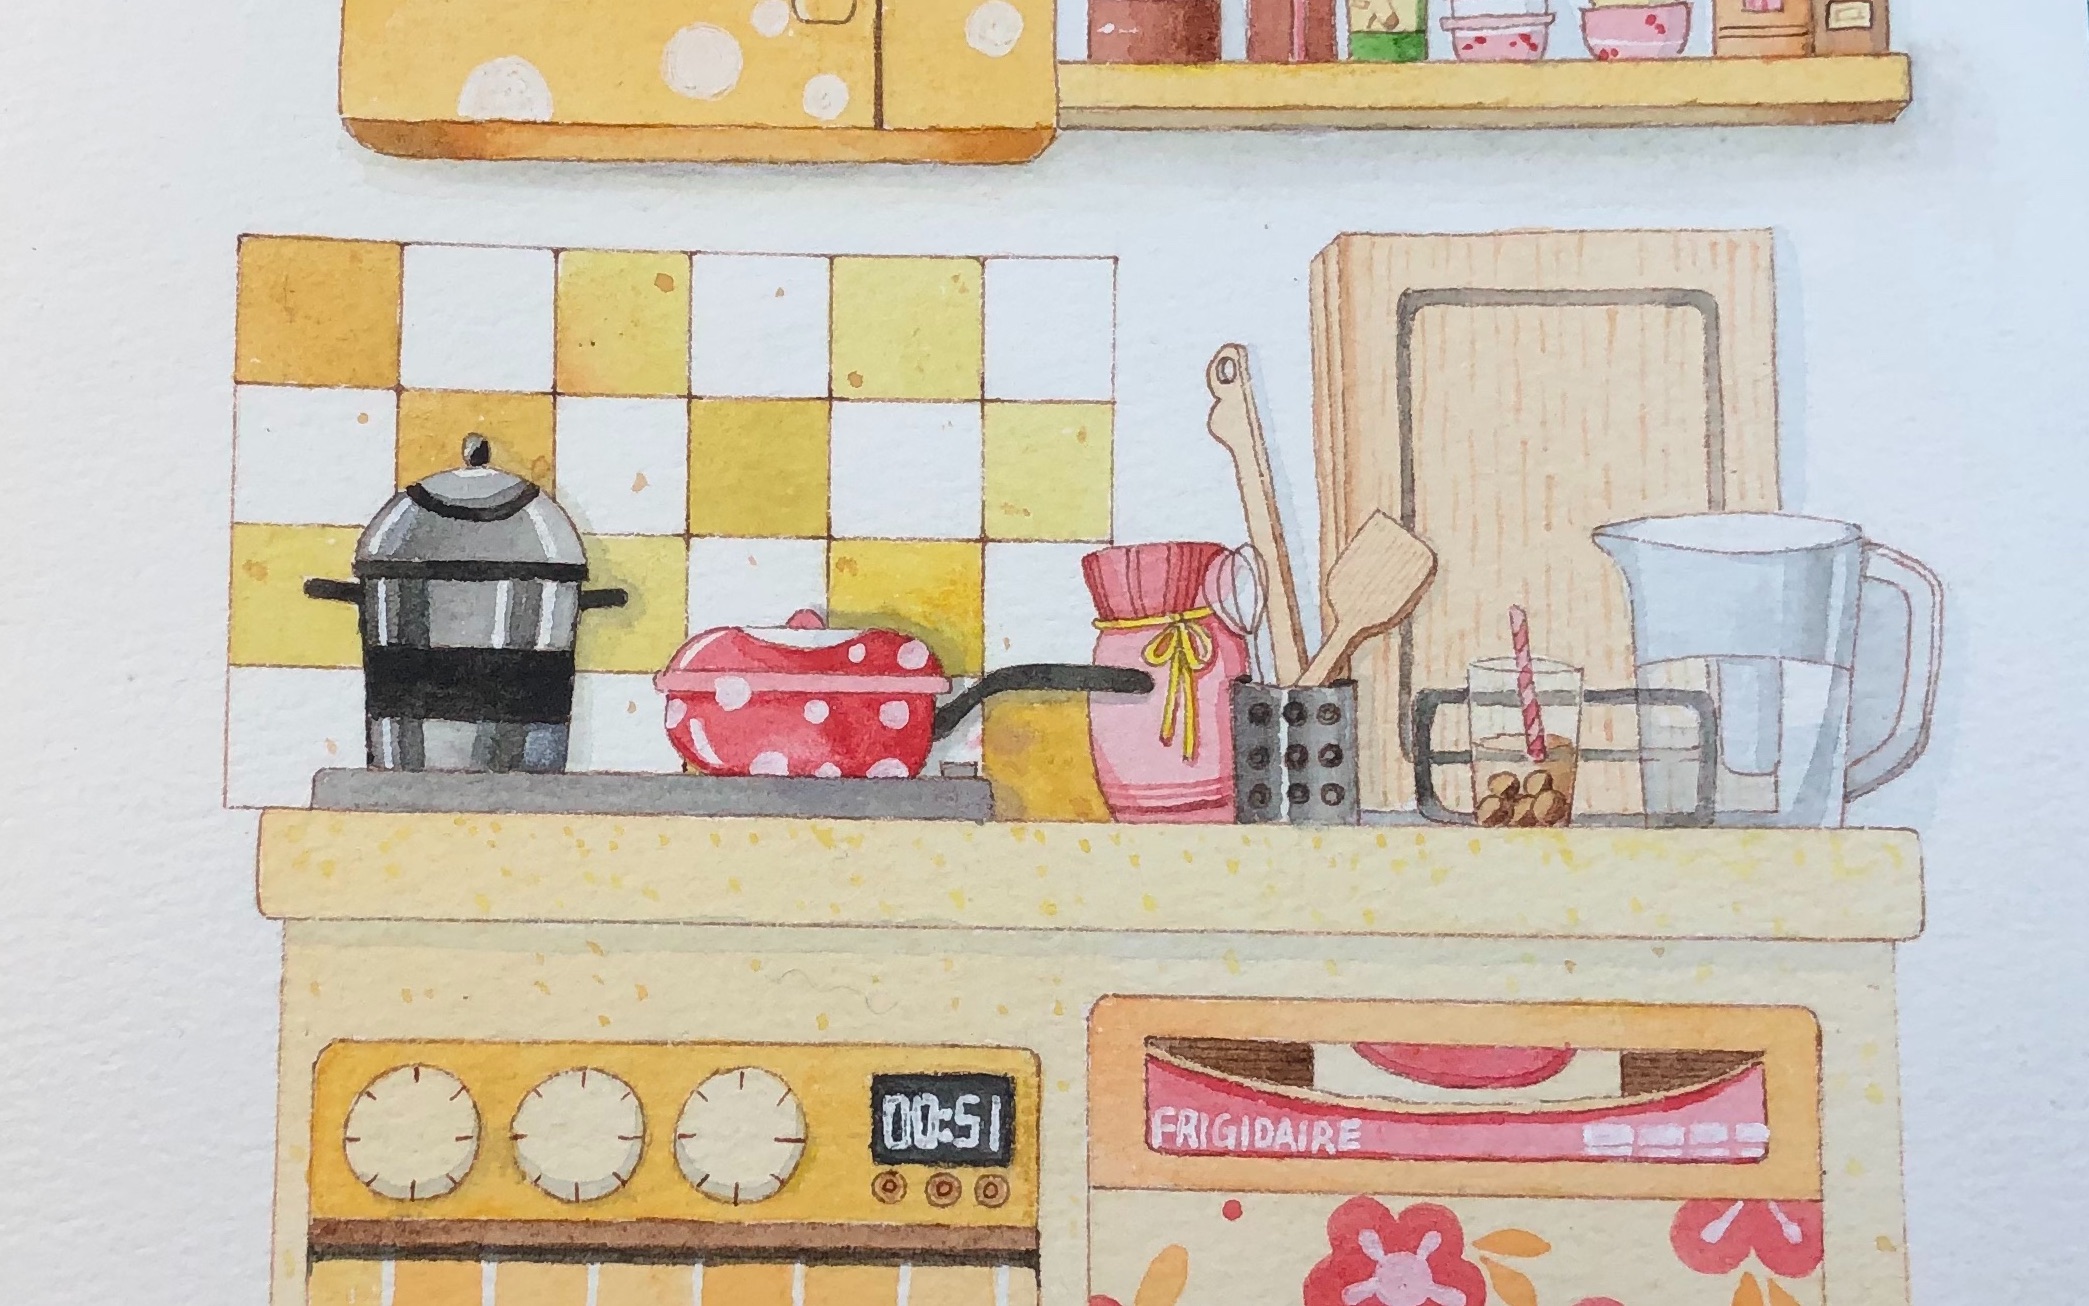 厨房效果图手绘马克笔图片